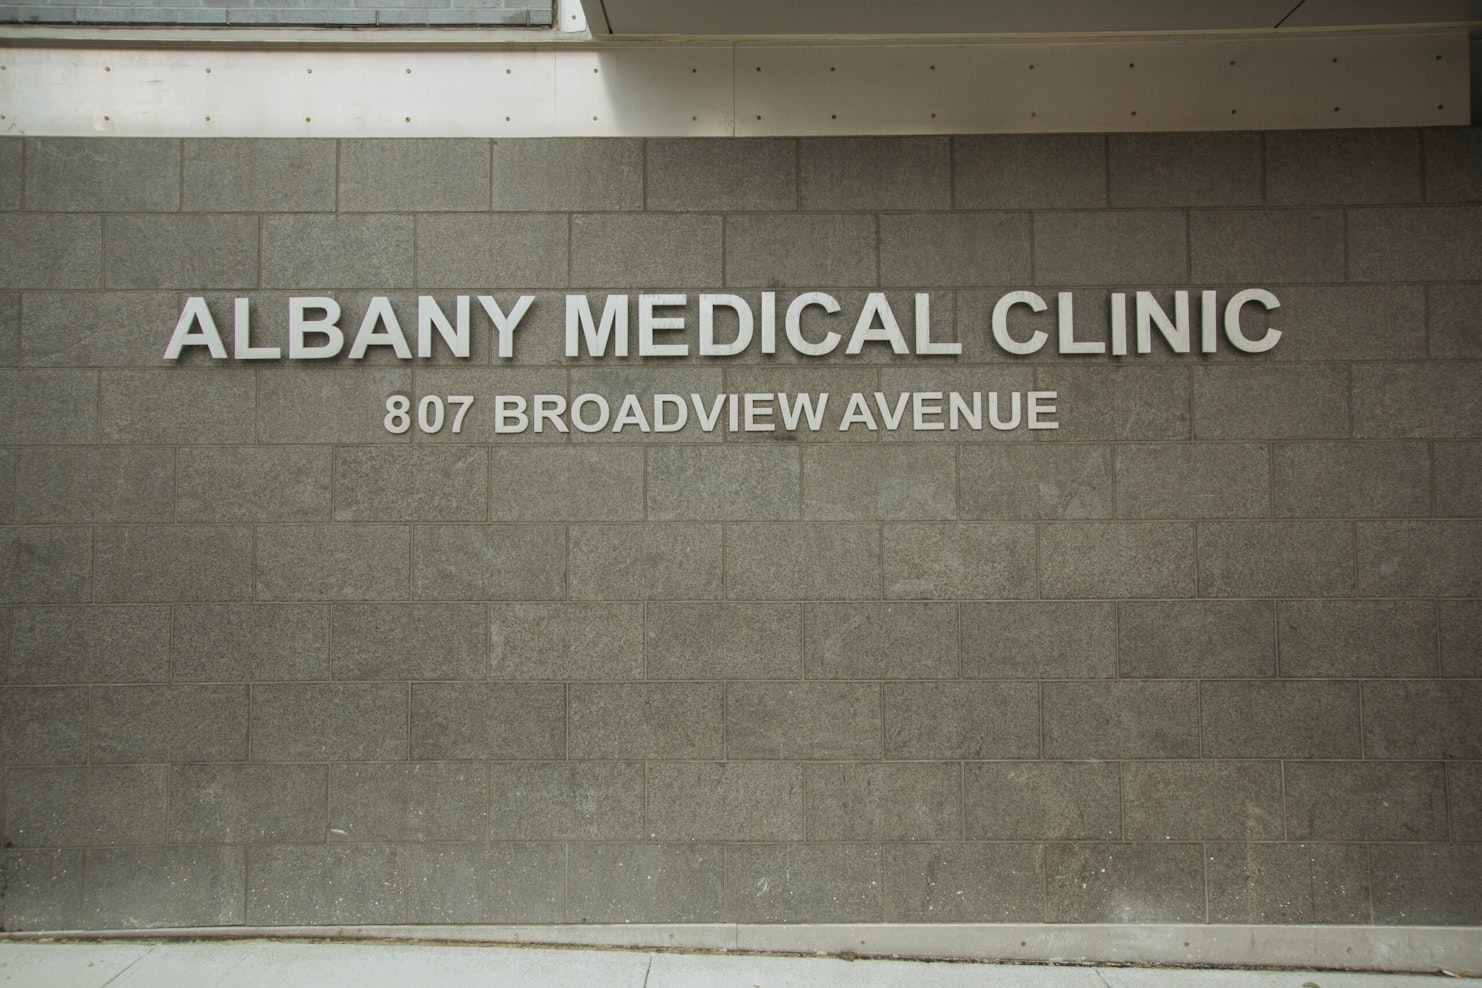 Photo of Albany Medical Clinic Signage